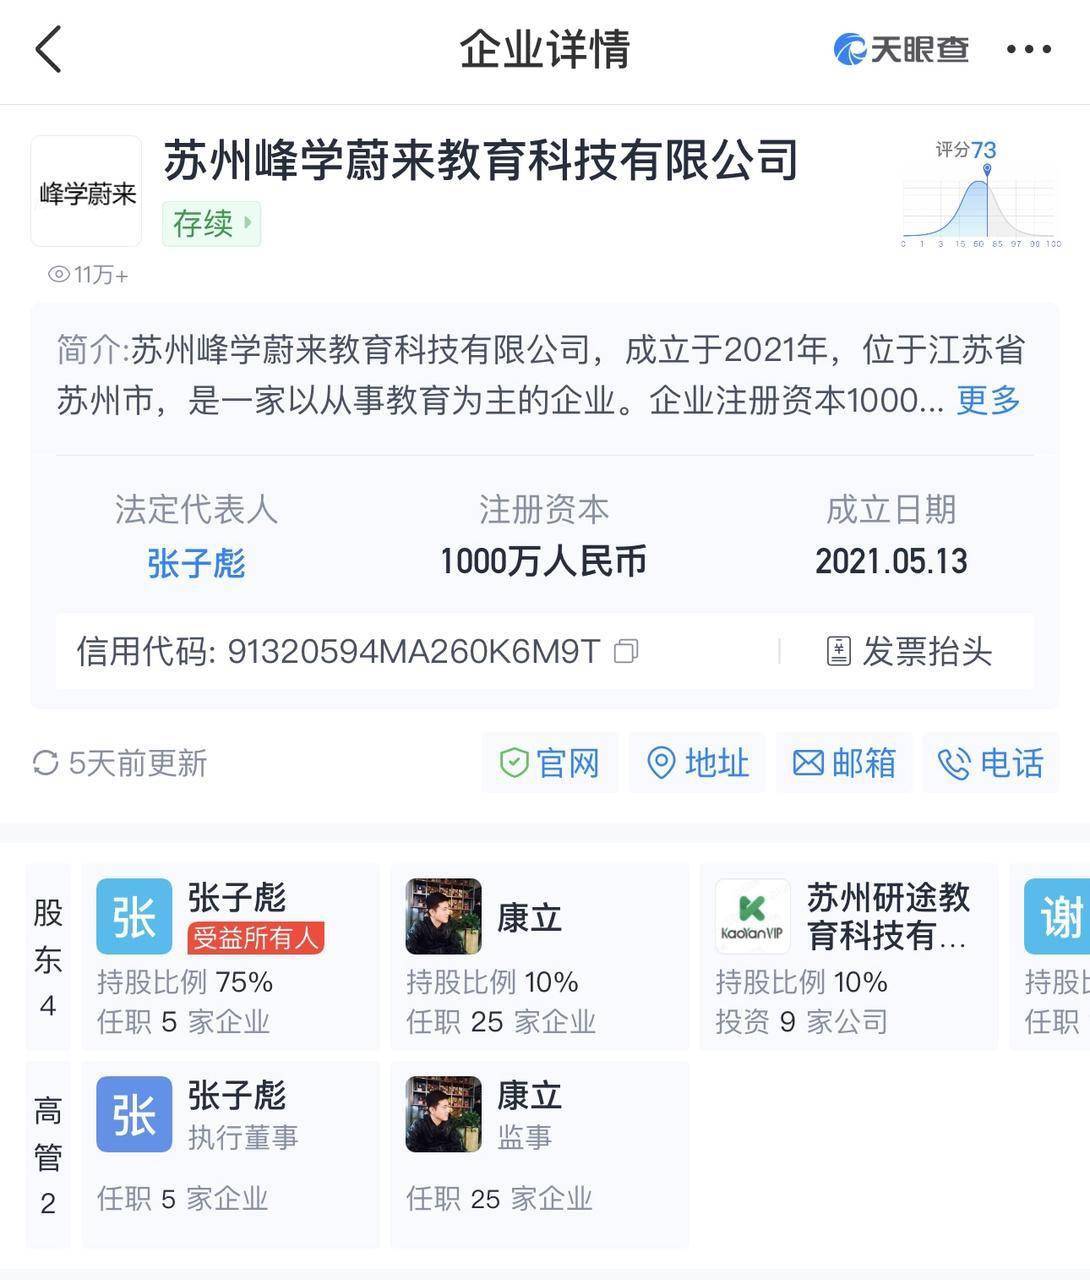 张雪峰成立2家科技公司上热搜，此前多次因出格言论惹争议